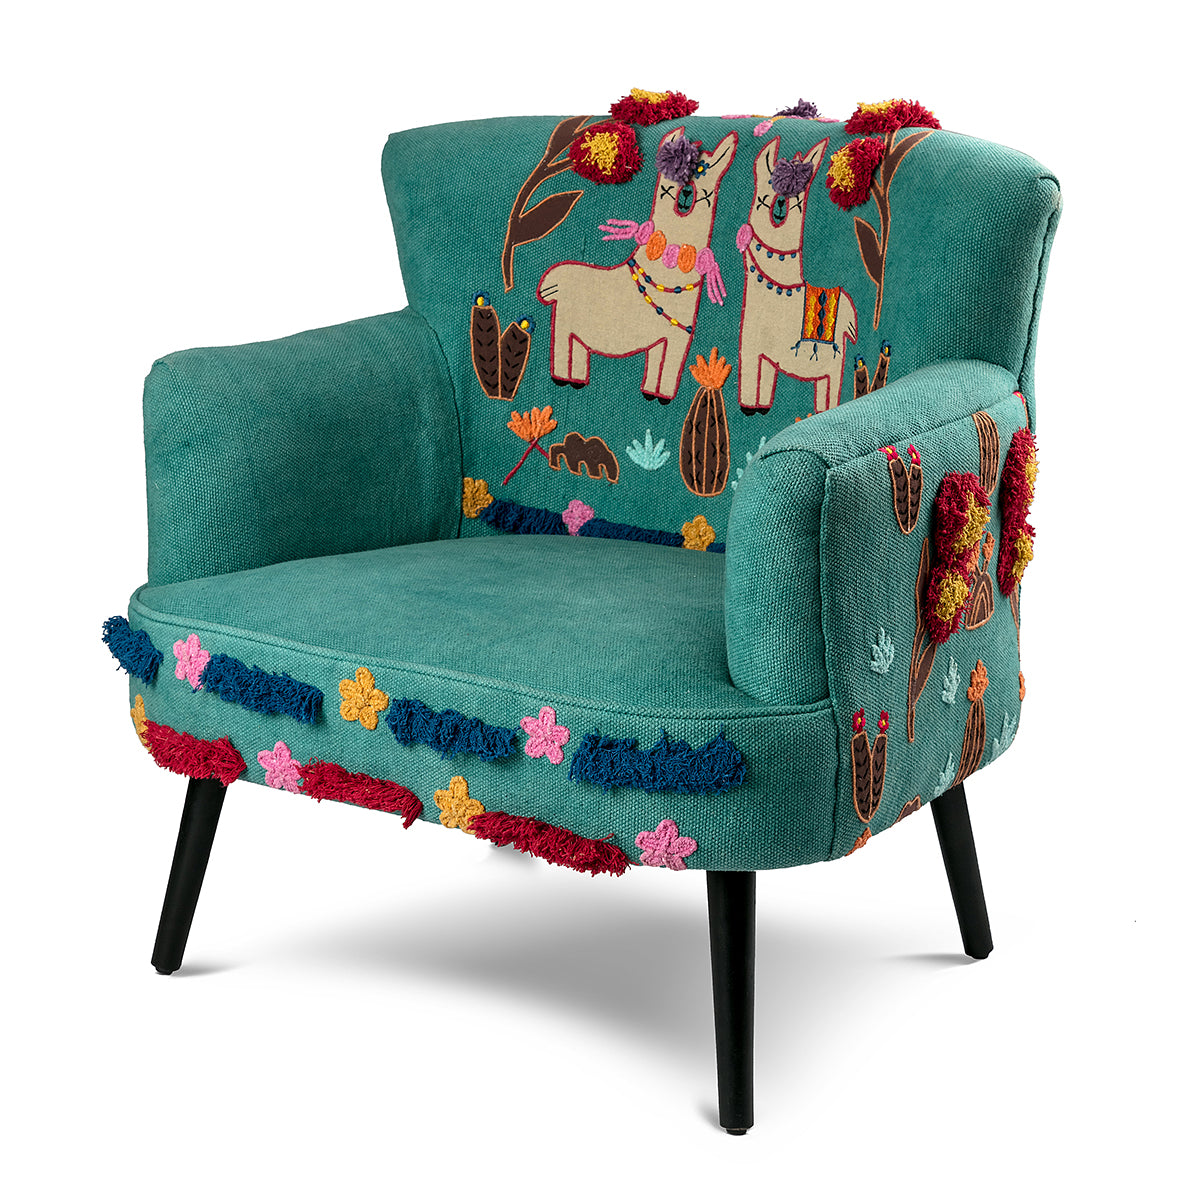 The Applique Llama Chair